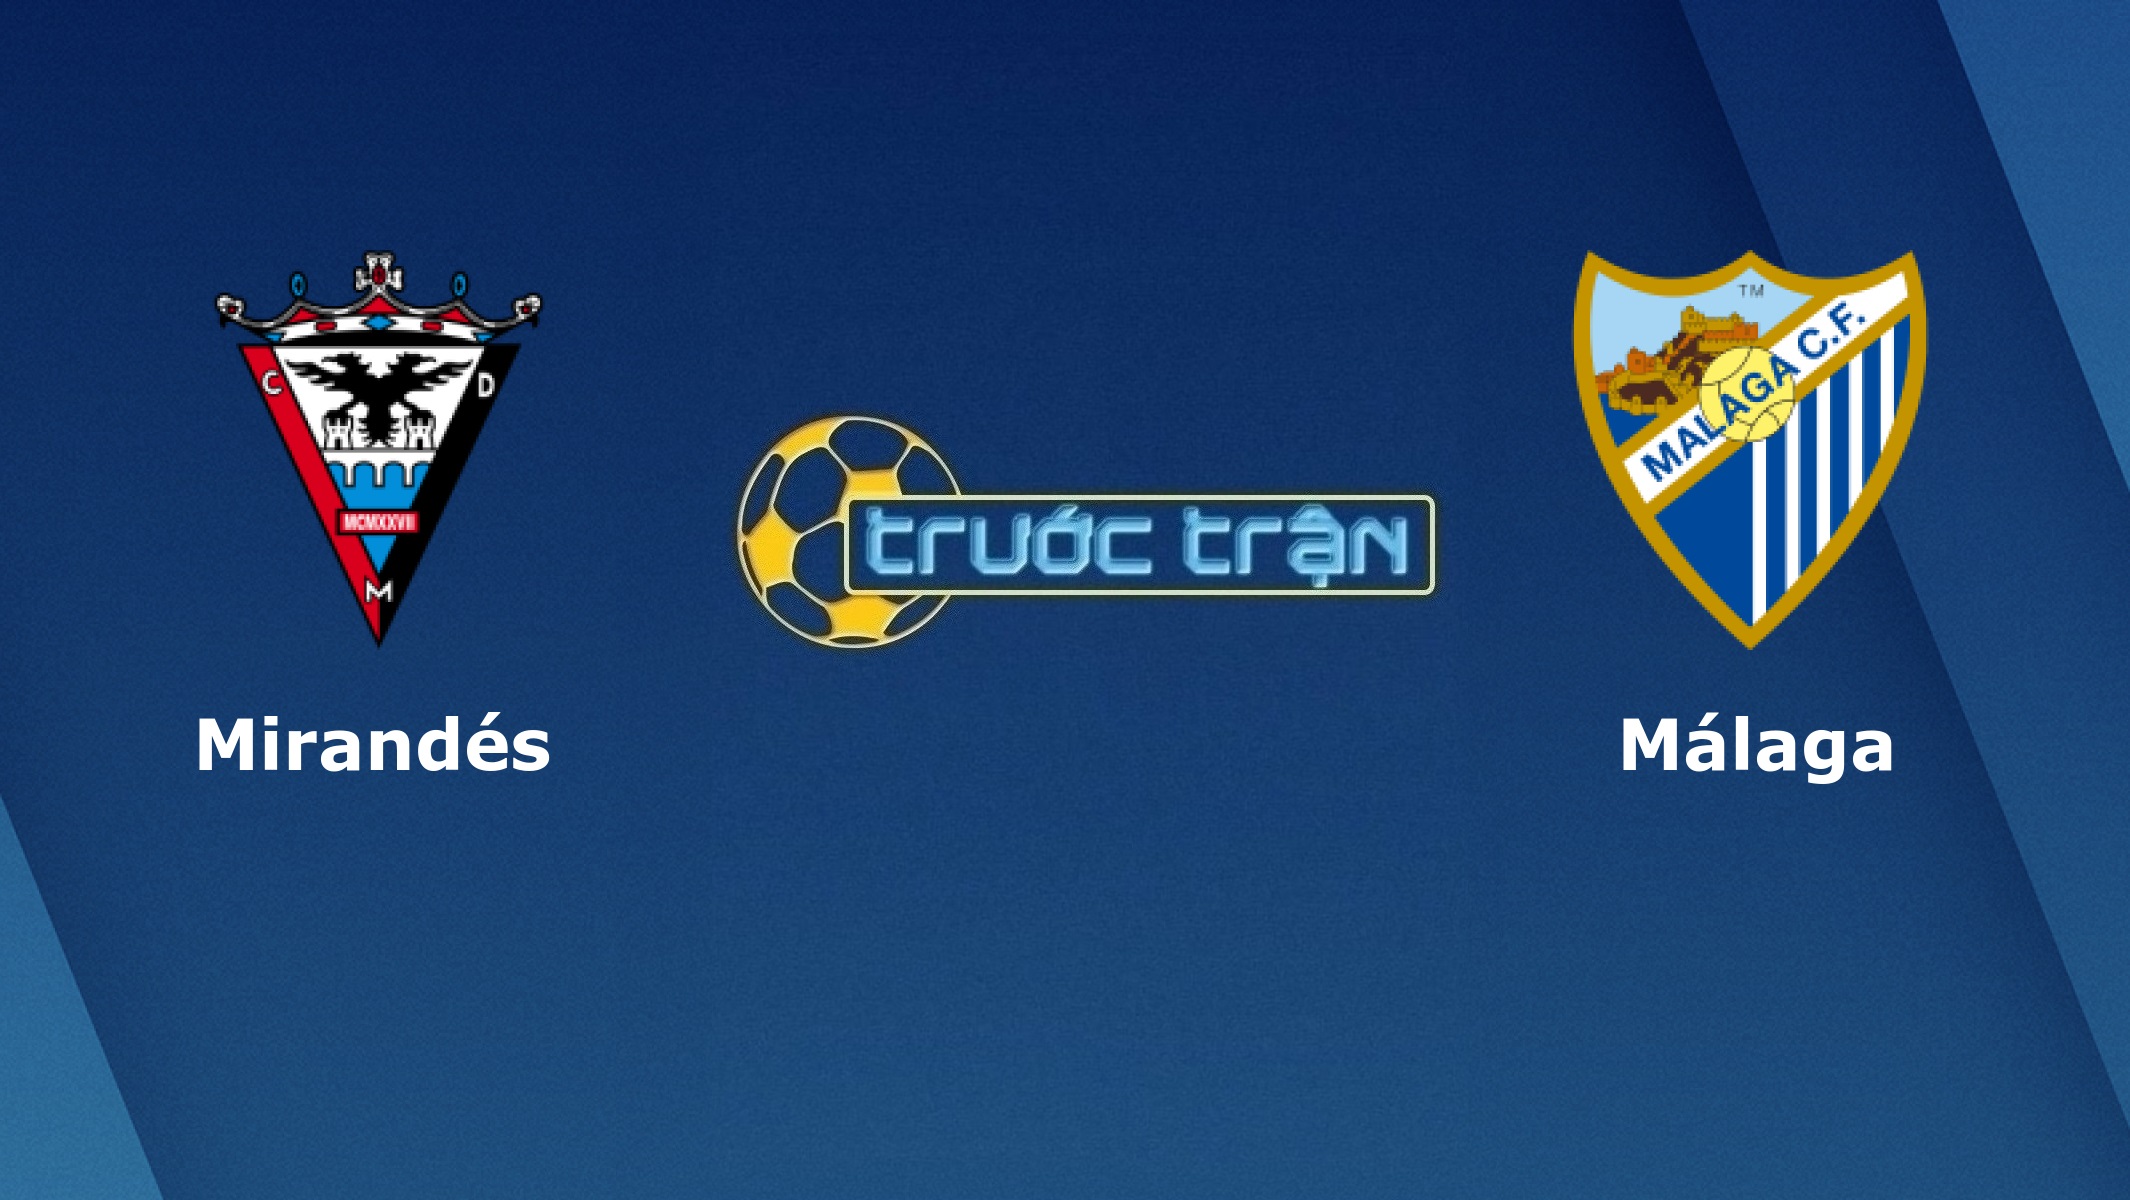 Mirandes vs Malaga – Tip kèo bóng đá hôm nay – 01h00 02/03/2021